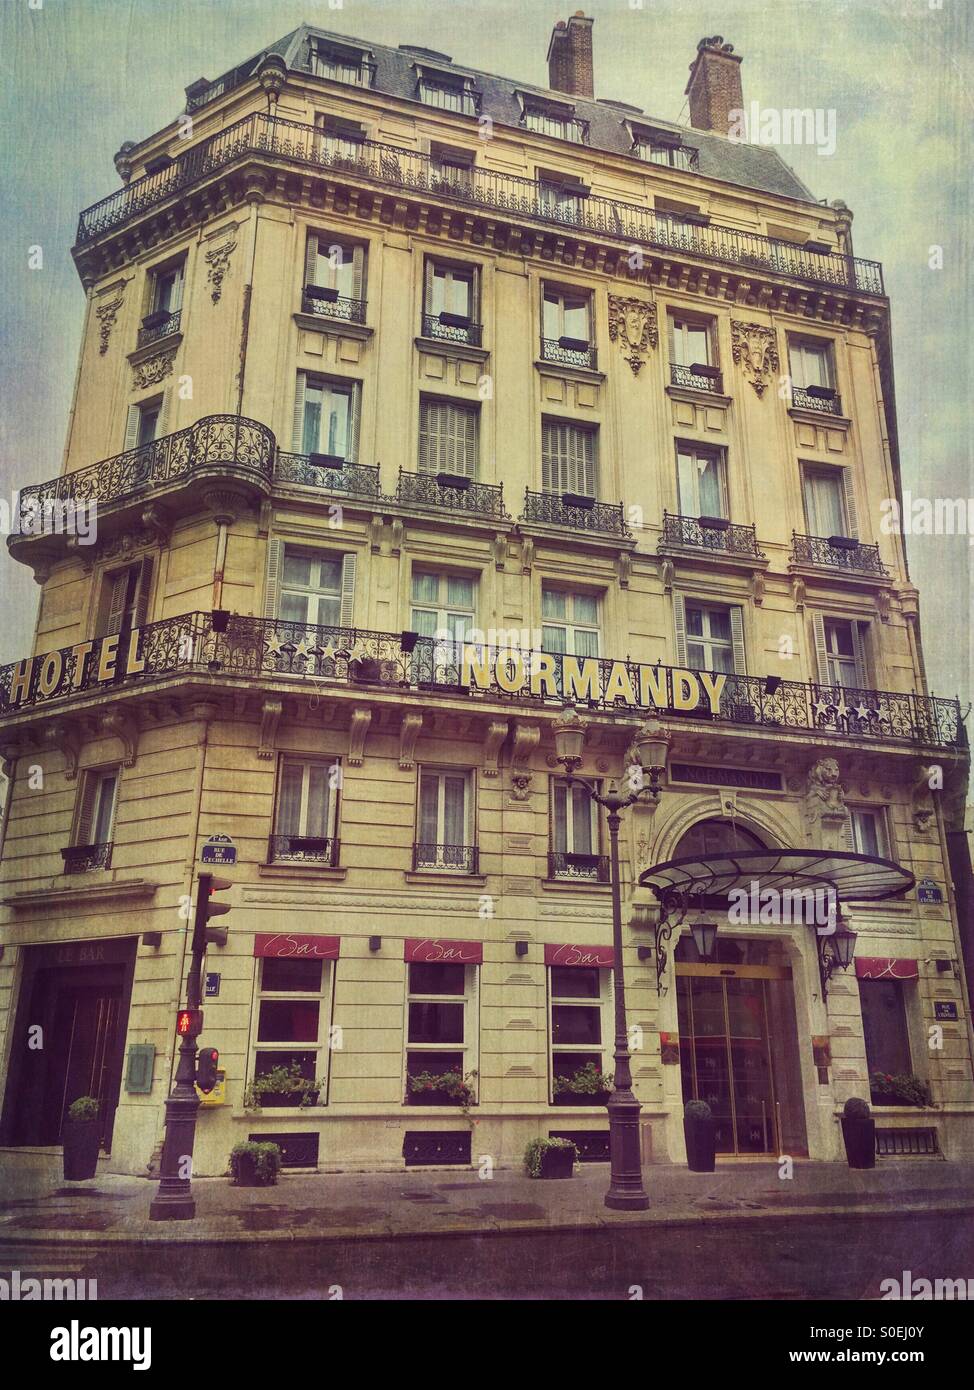 Vista di Hotel Normandy, situato nel centro storico di Parigi, Francia. Antiquariato, look retrò con l'annata di Grana carta overlay. Foto Stock